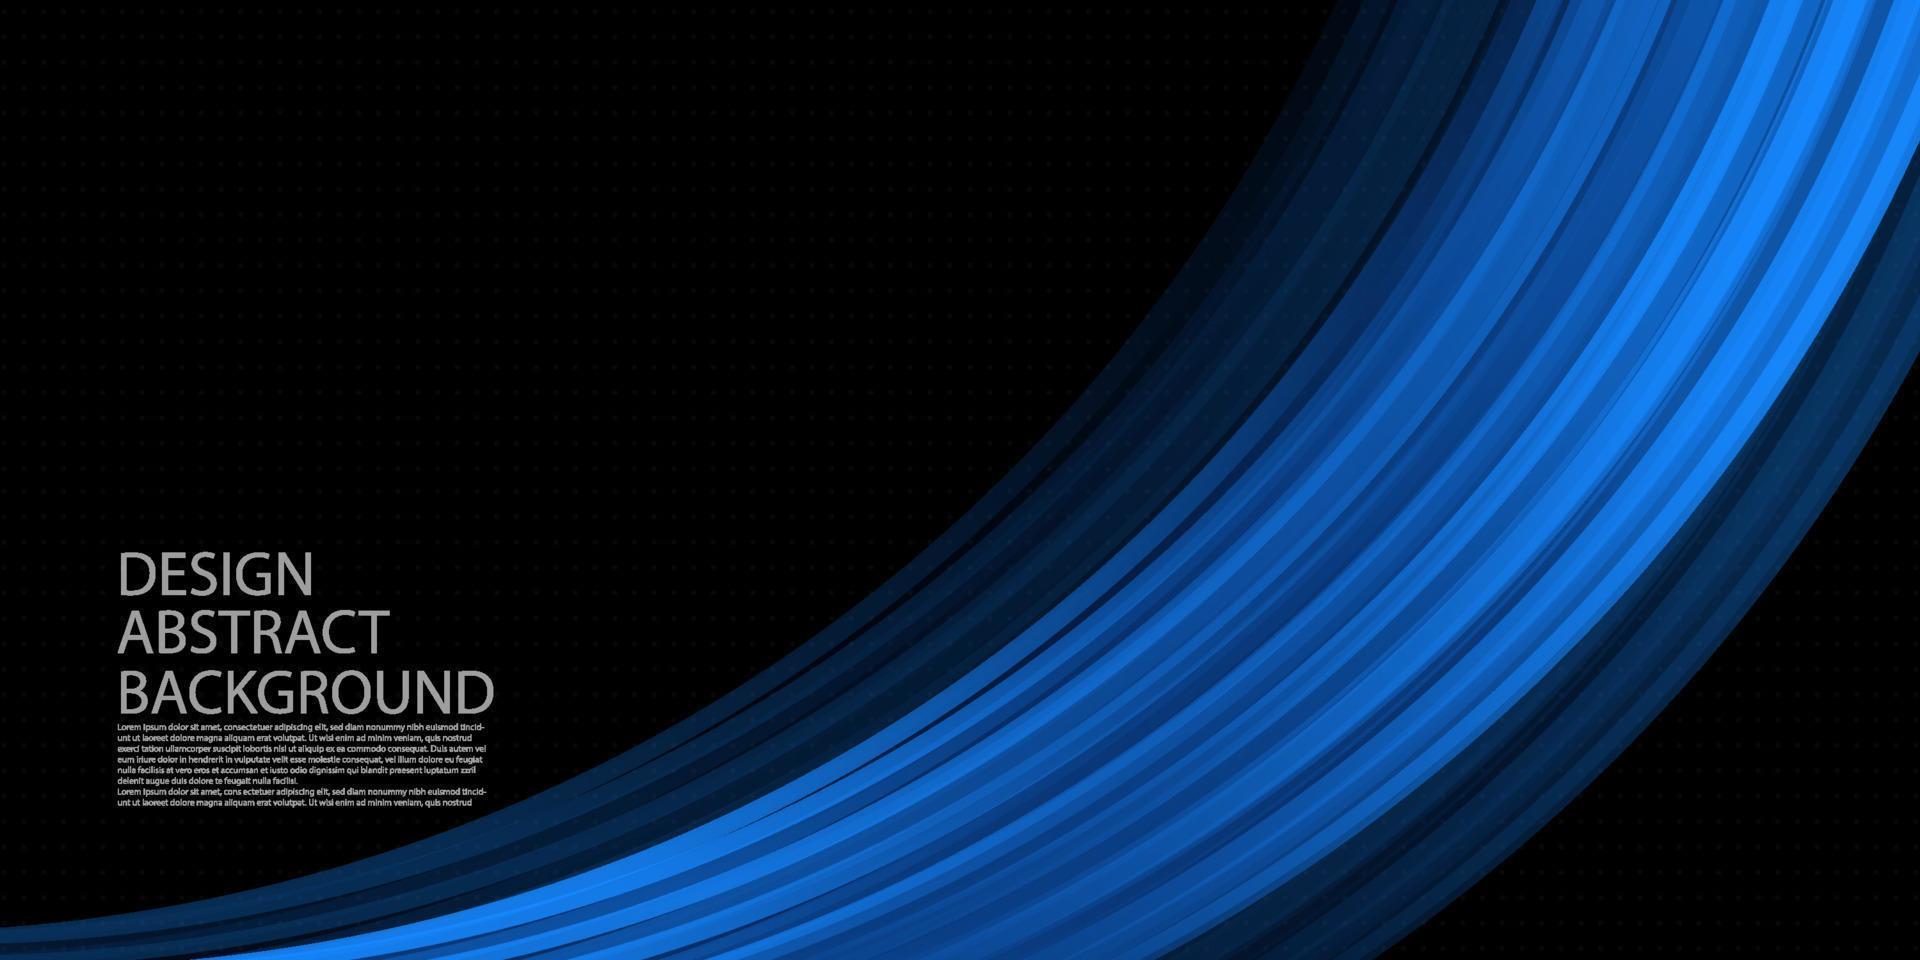 geometria de fundo abstrato azul elegante moderno para banner, capa, folheto, folheto, design de pôster, apresentação de negócios e site. vetor eps10